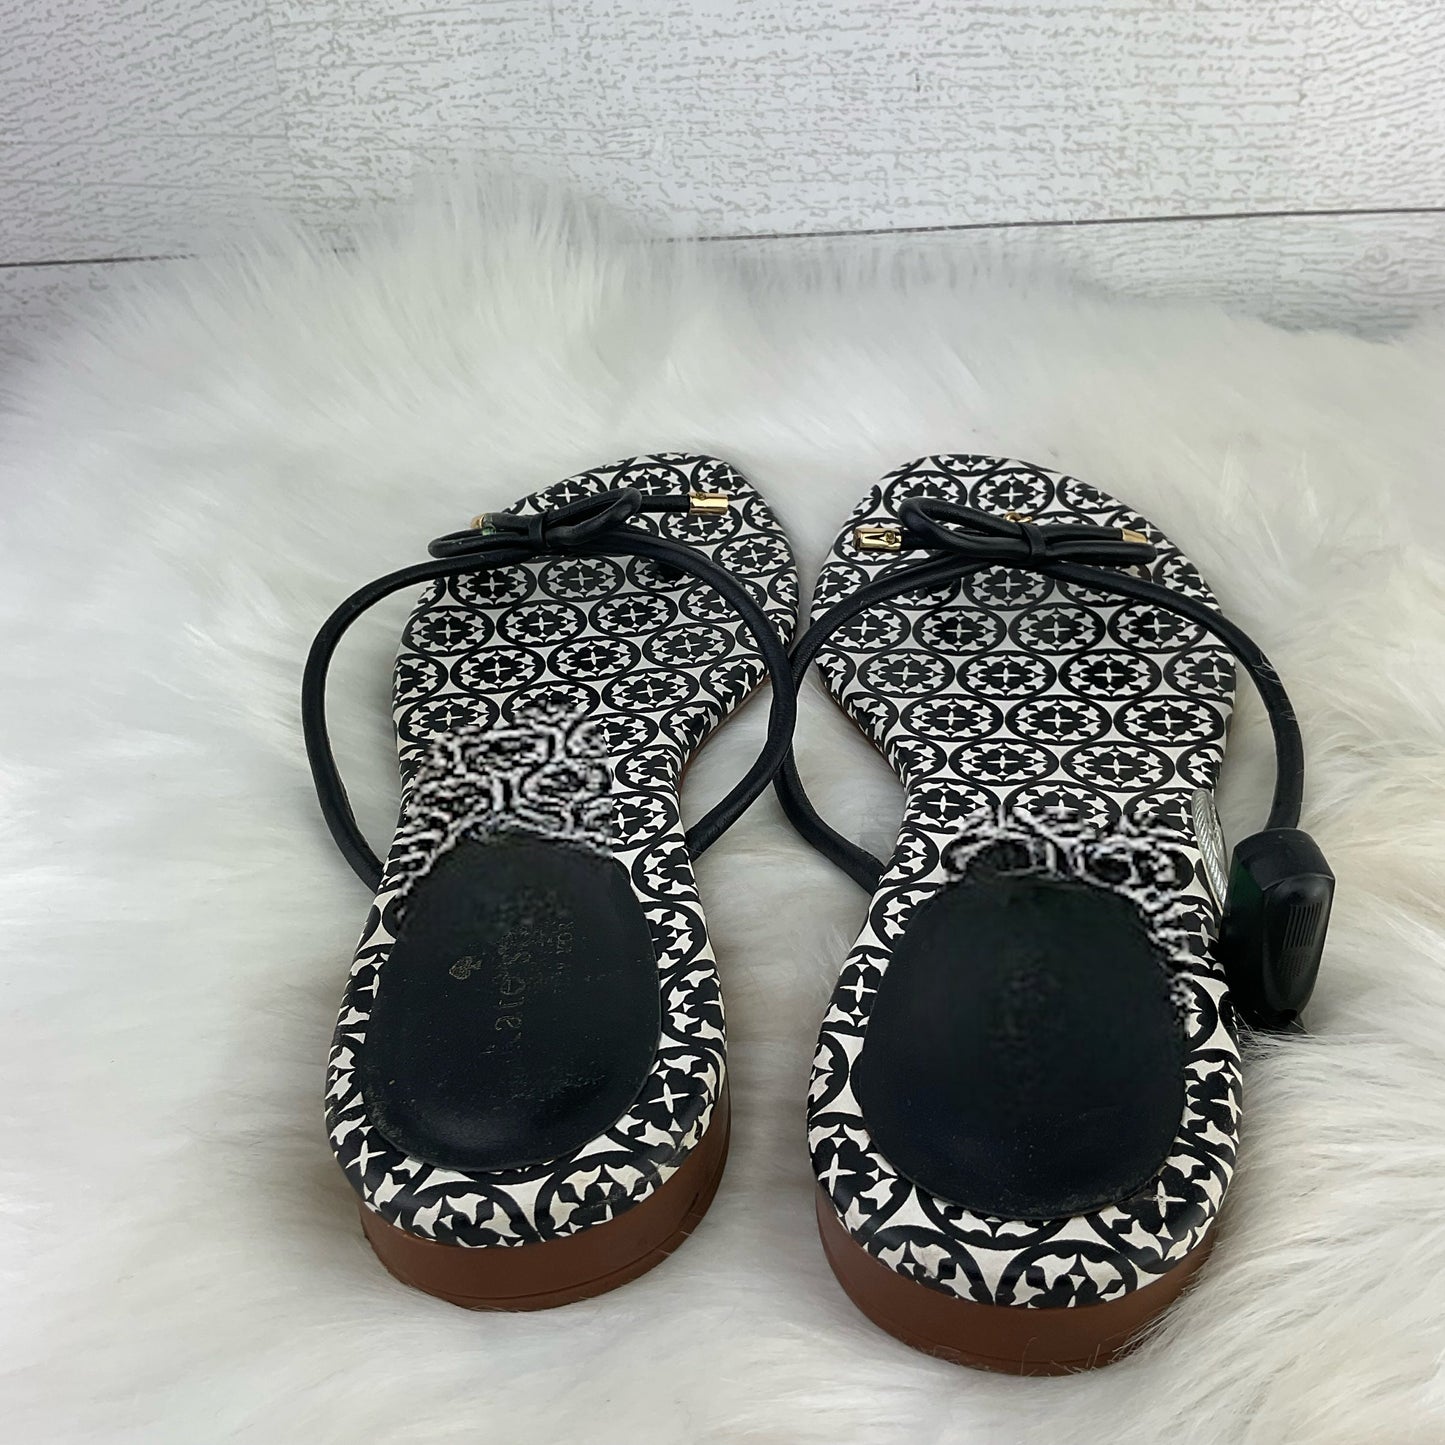 Sandals Designer By Kate Spade  Size: 10